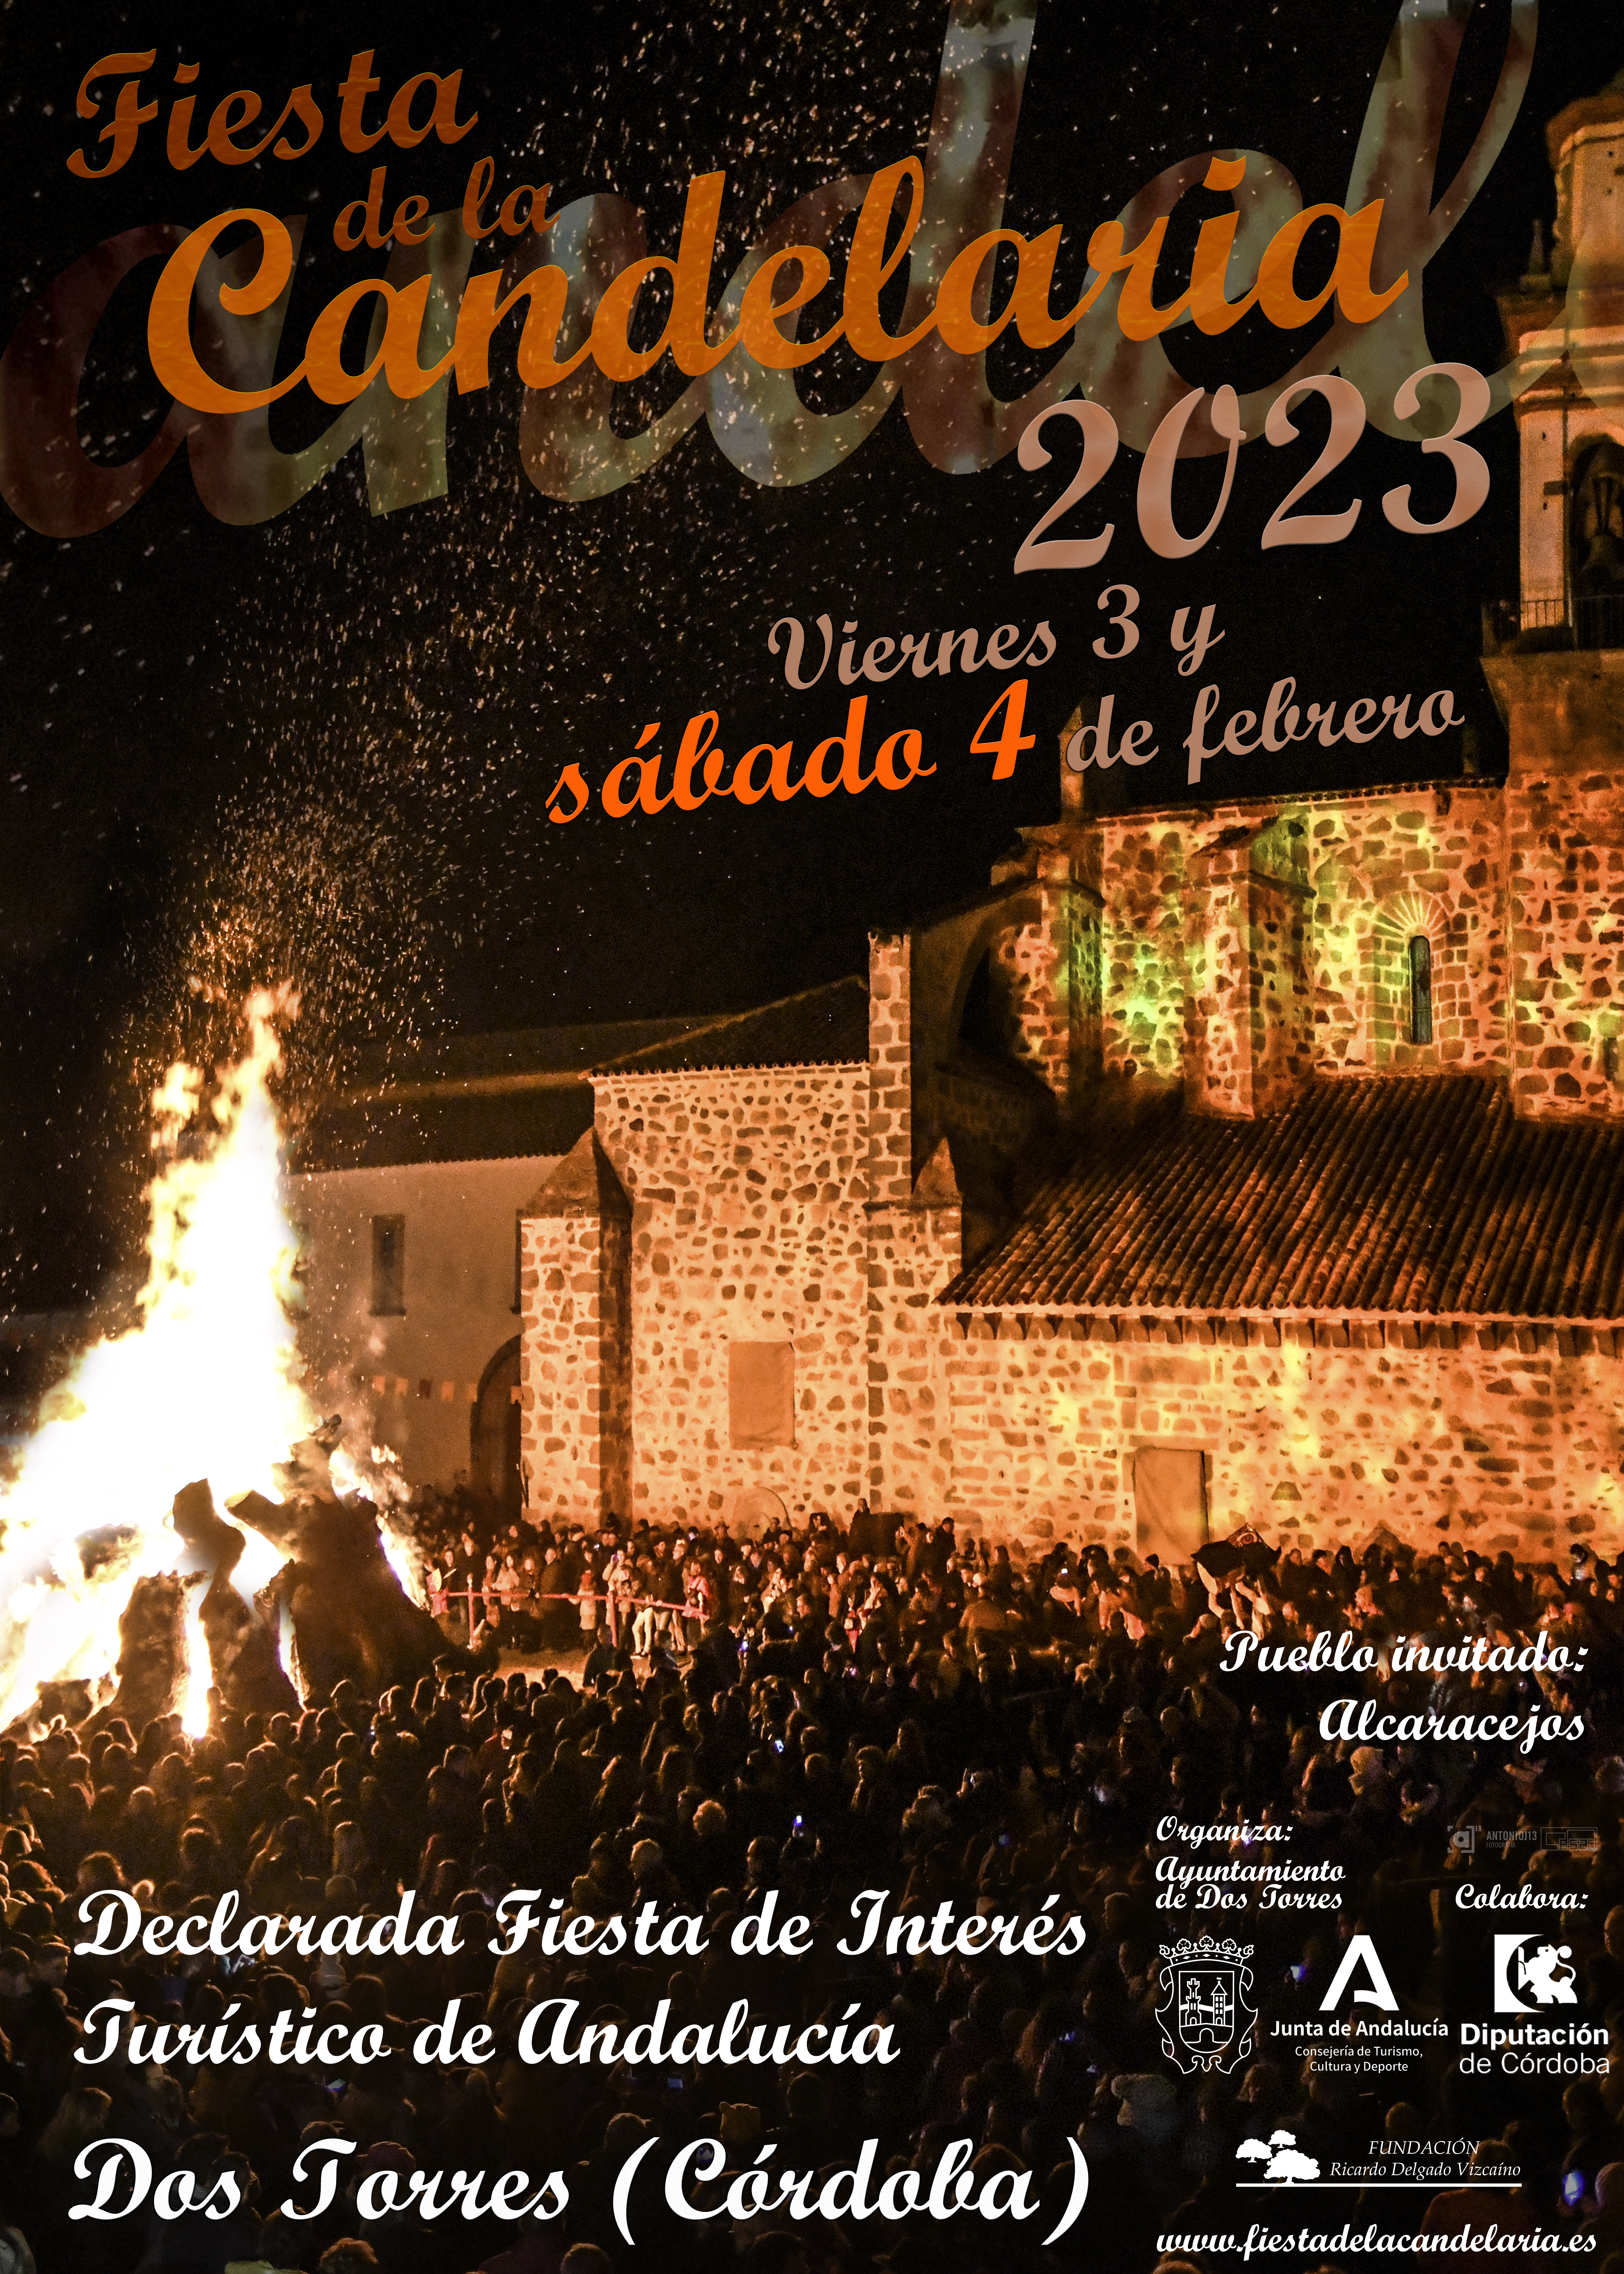 Horarios y programación Fiesta de la Candelaria 2023